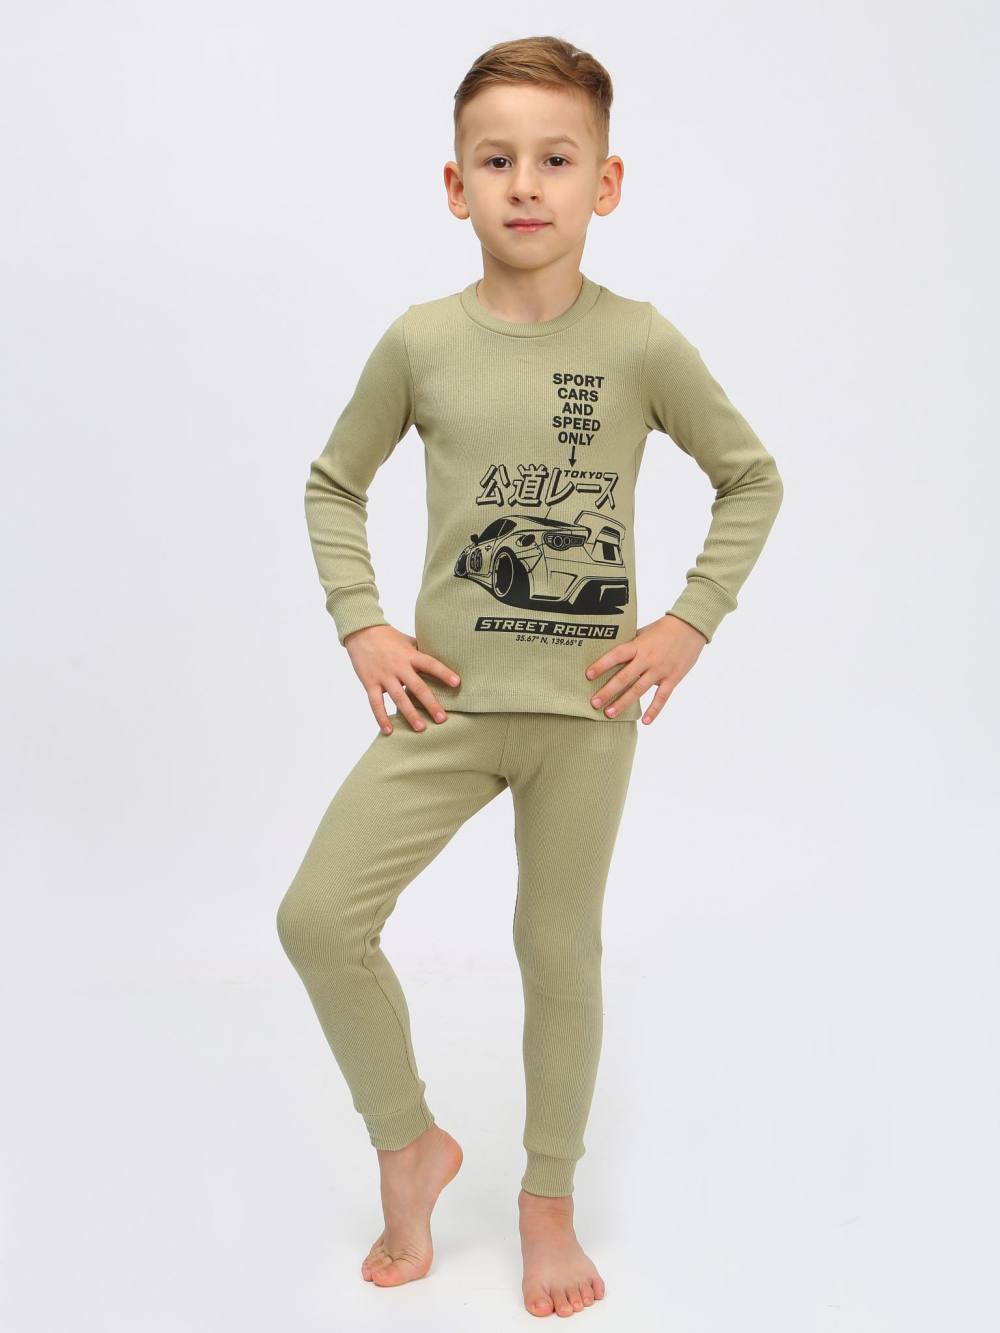 Пижама для мальчика. Артикул 000002720